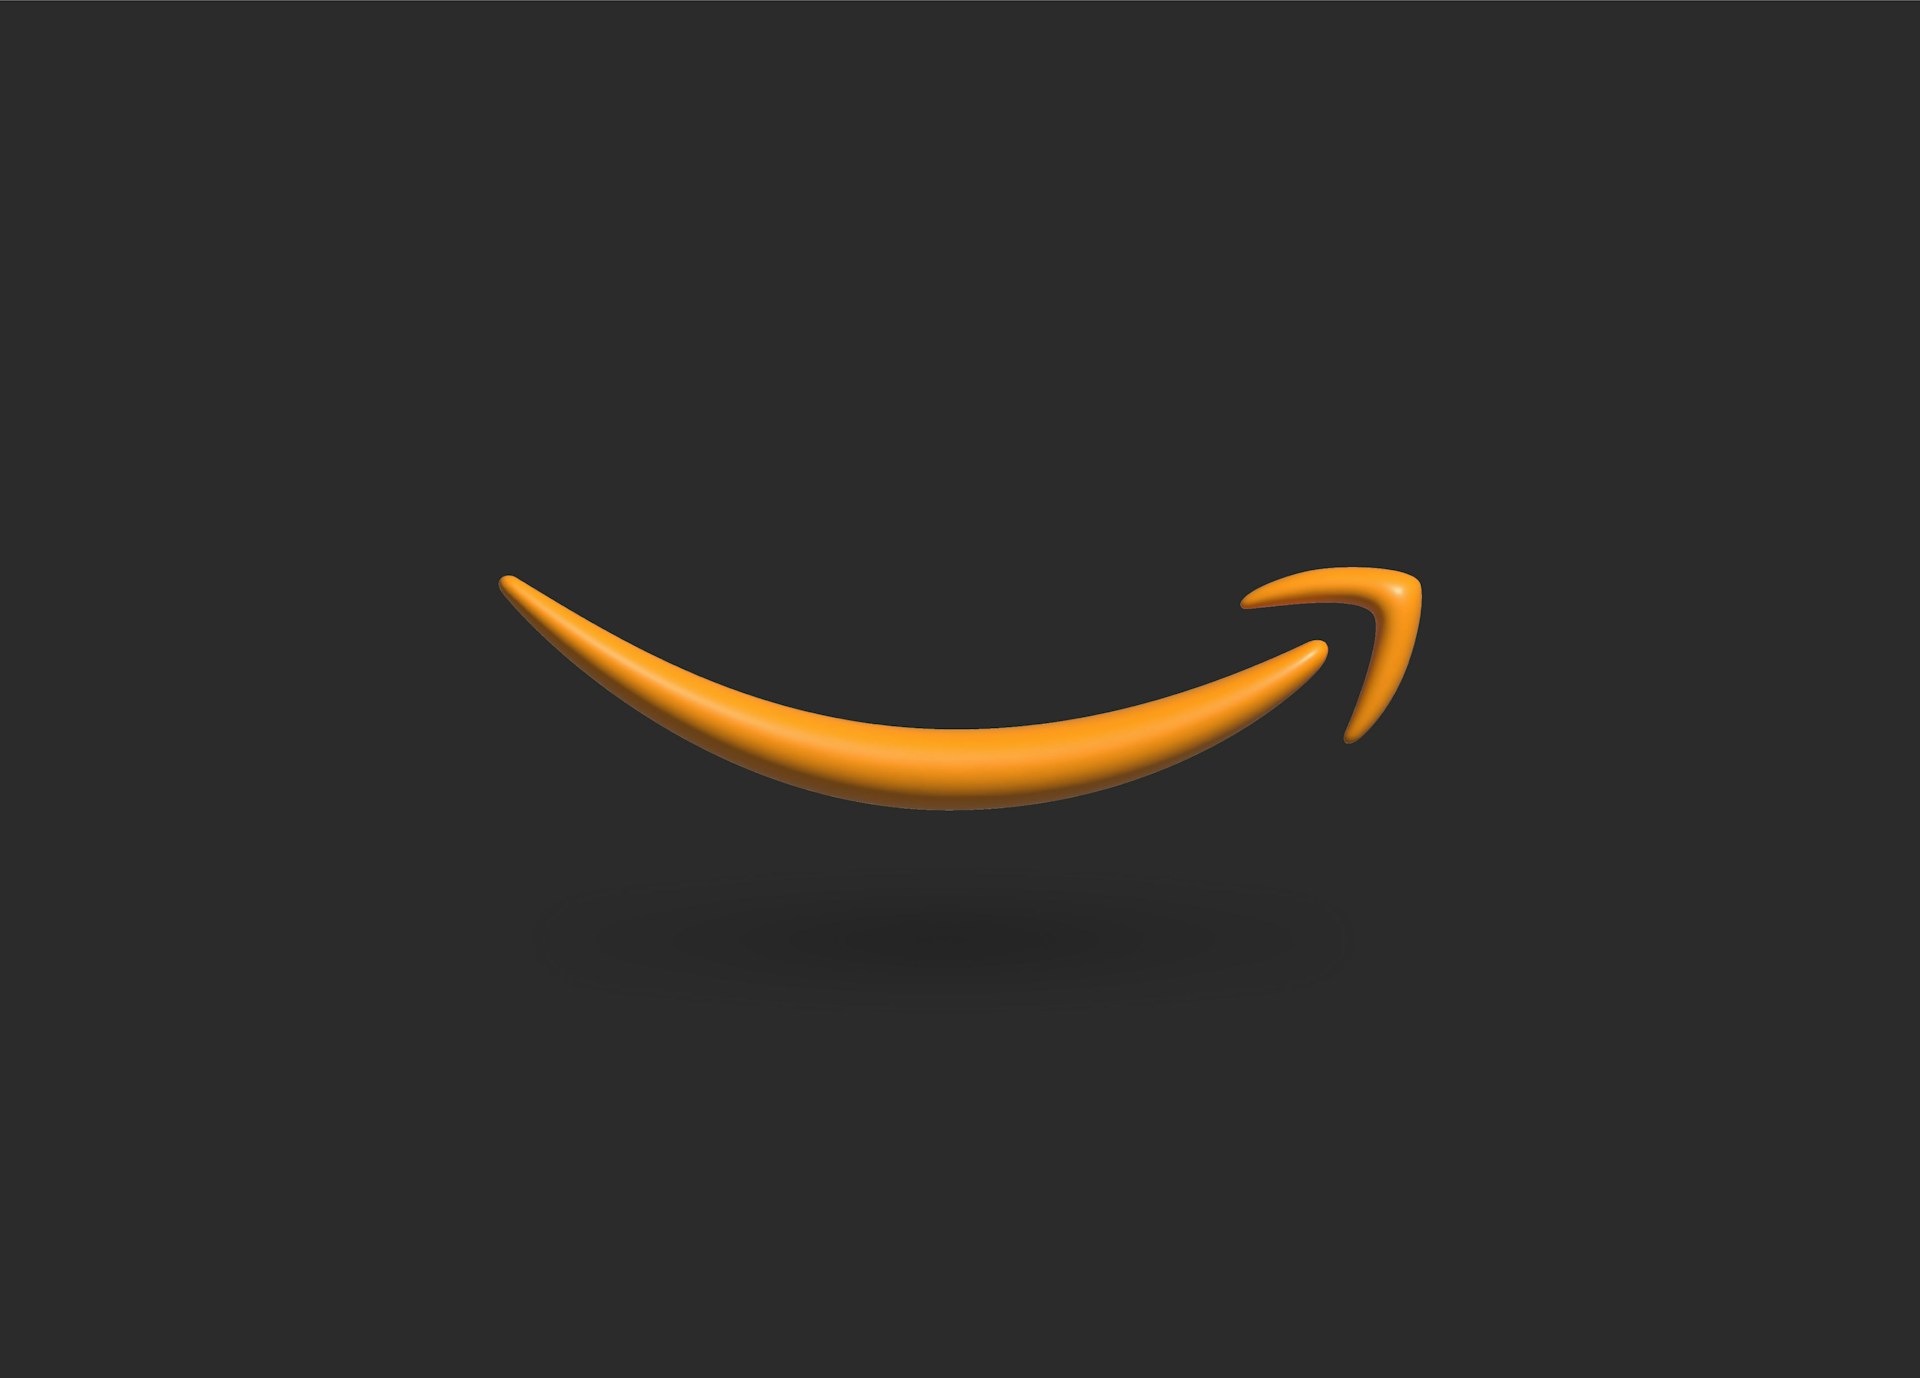 Amazon negeerde bewust auteursrechtwetten bij het trainen van AI, claimt voormalig werknemer